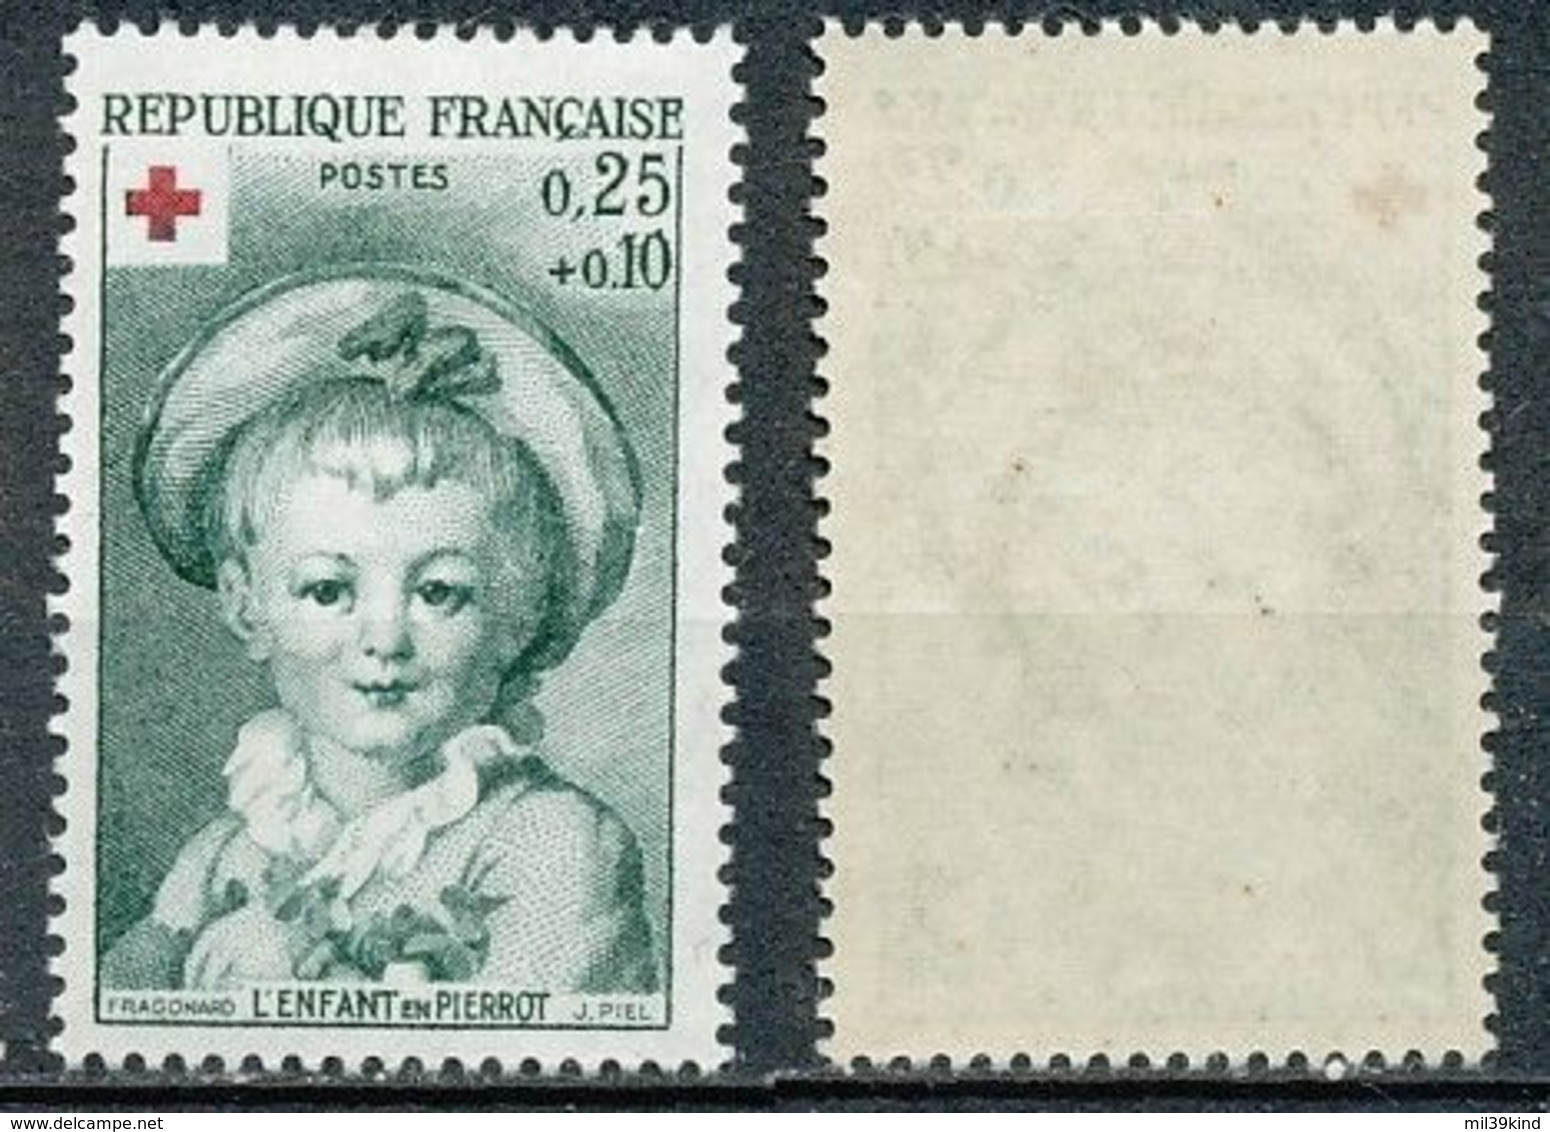 FRANCE - 1962 - Nr 1367 - Croix Rouge - Neuf - Ungebraucht